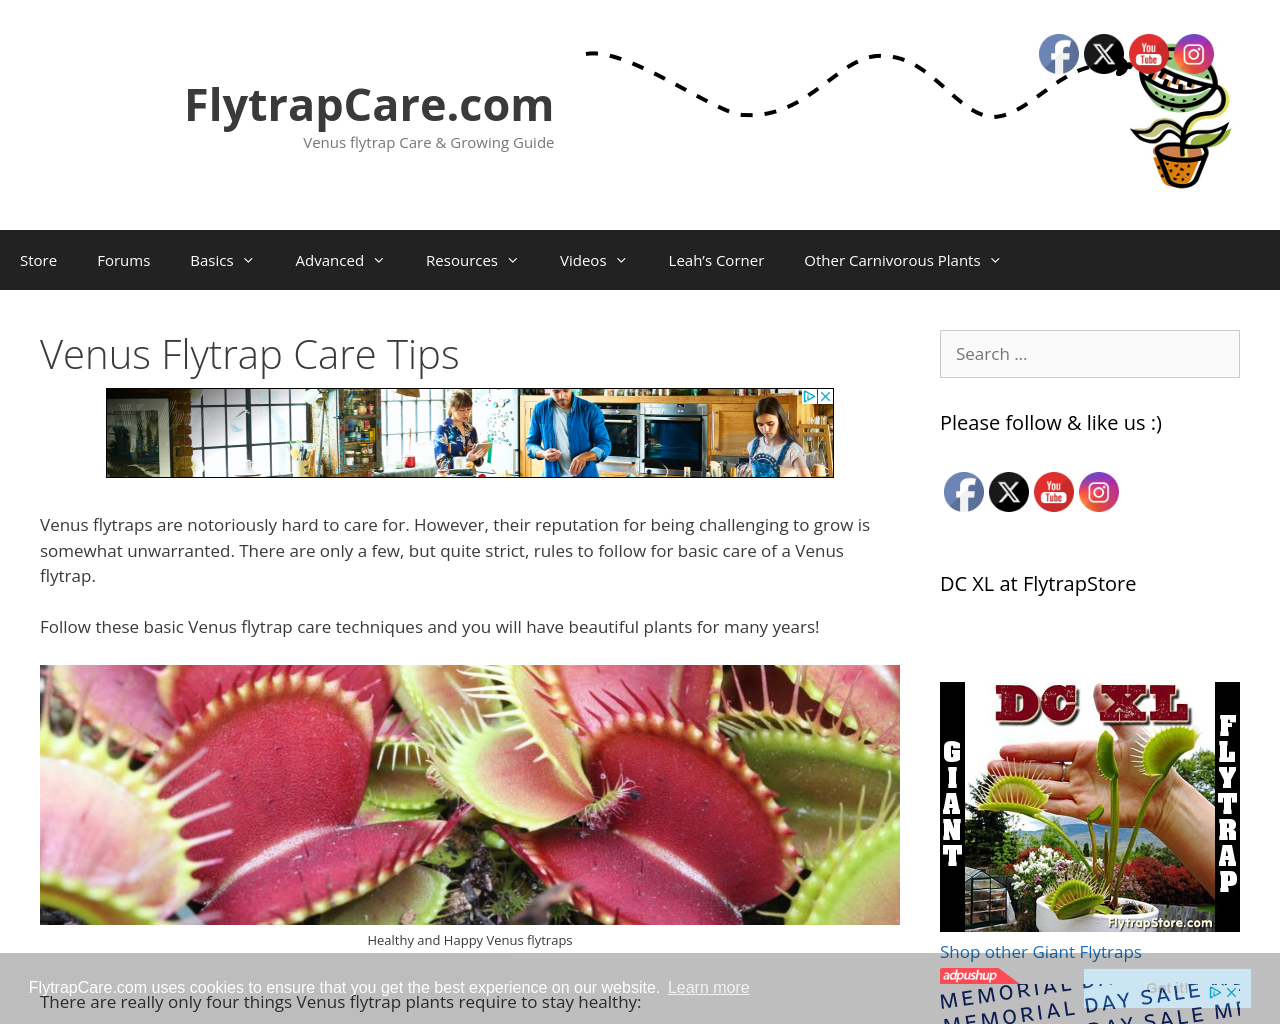 flytrapcare.com